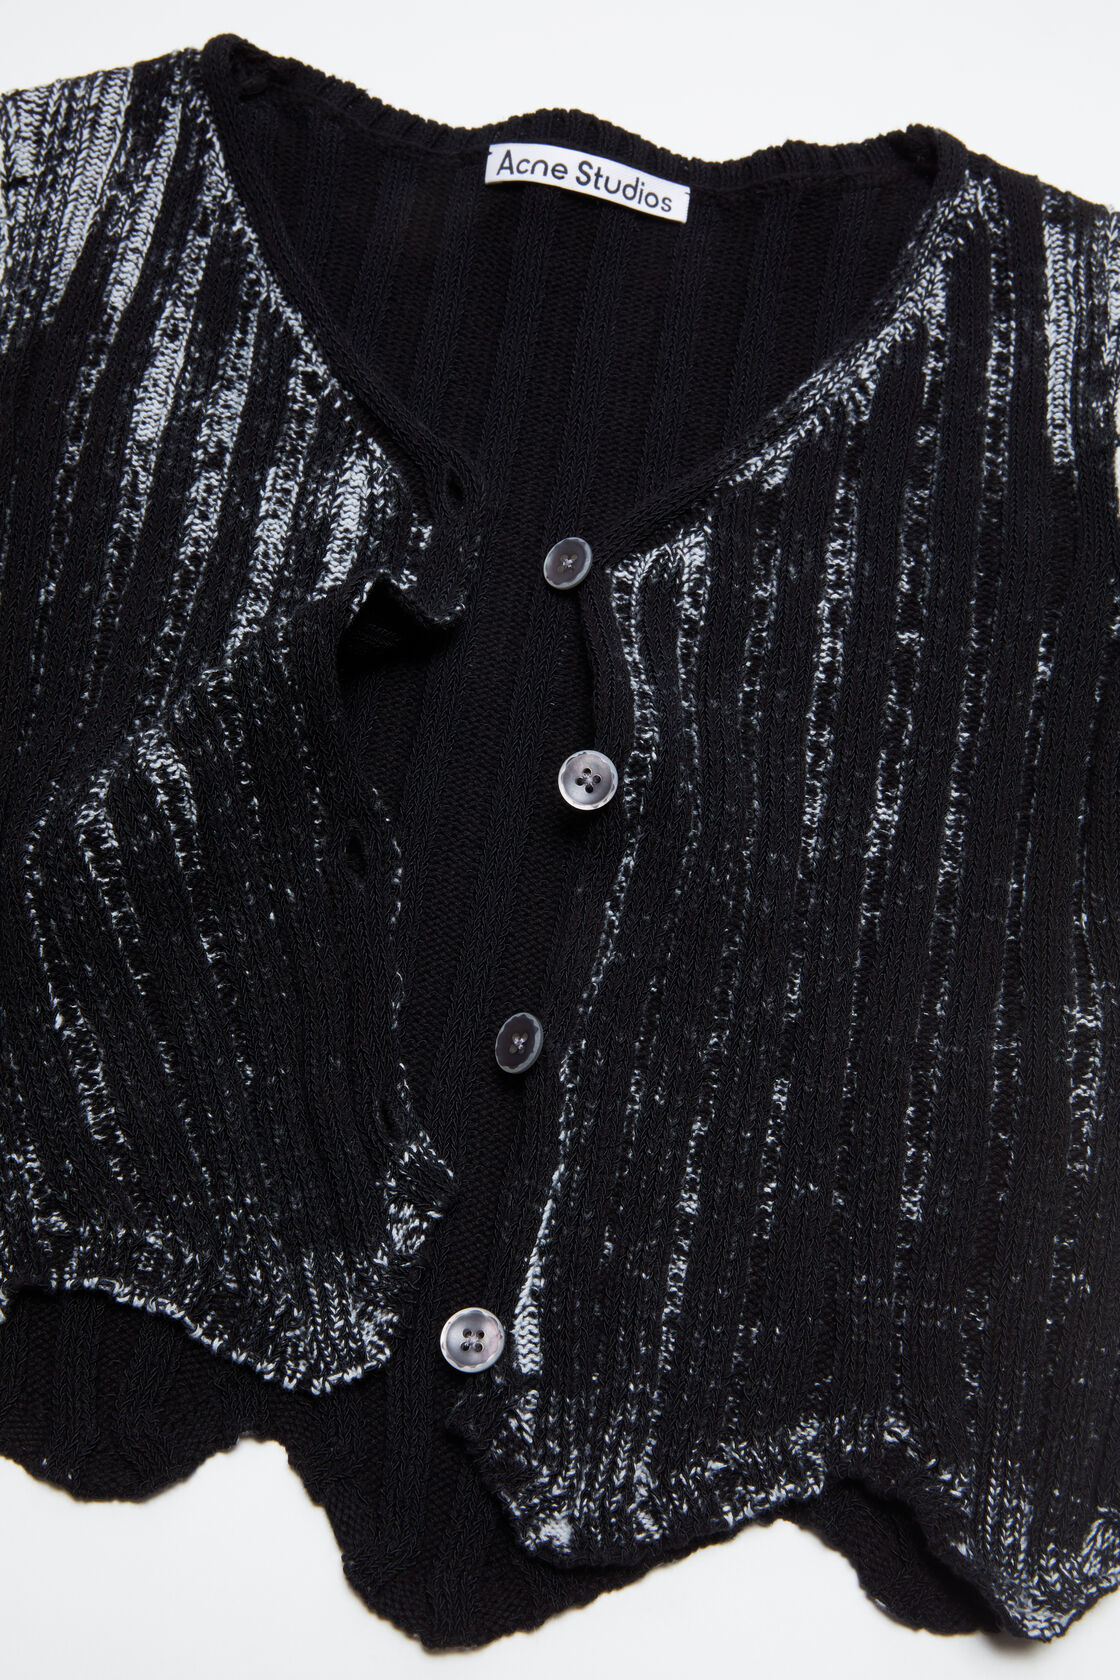 ACNE STUDIOS Knit Cardigan in Black/White